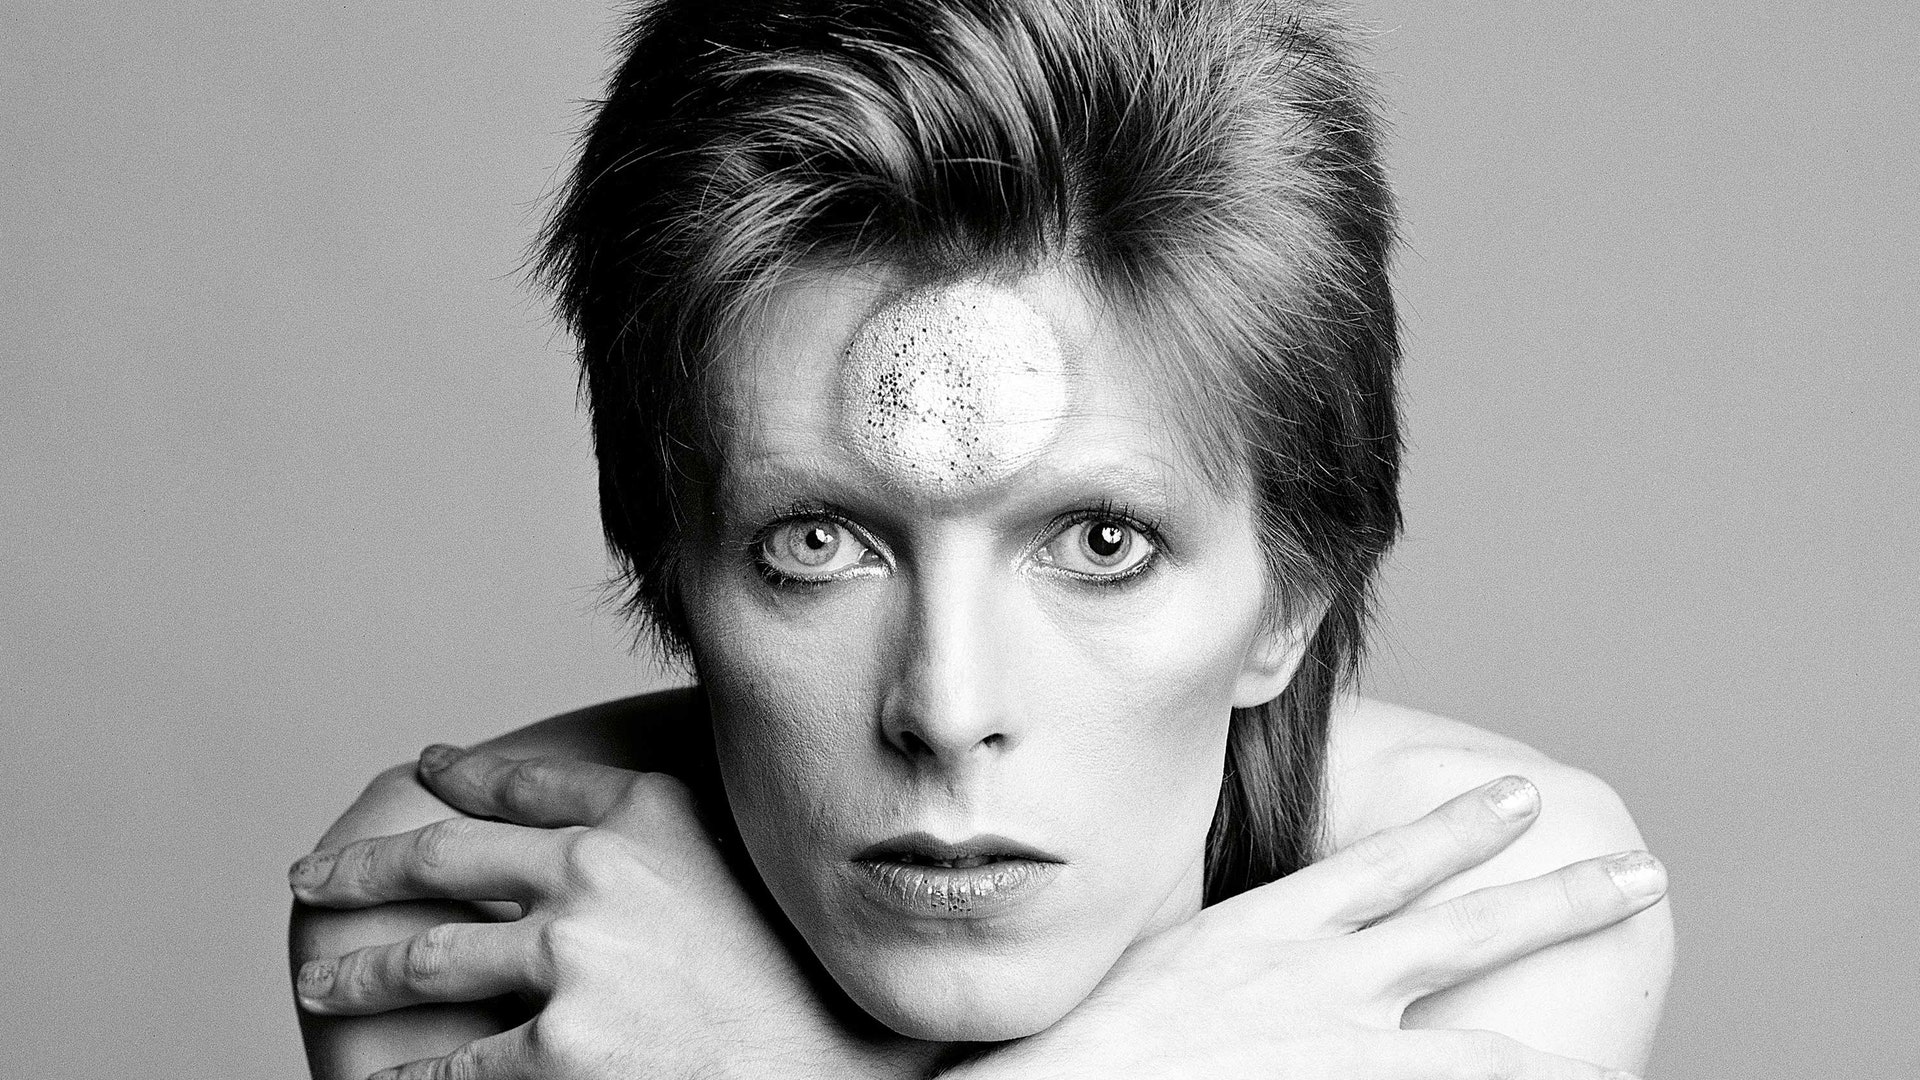 Toy, el álbum perdido de David Bowie, se estrenará en noviembre